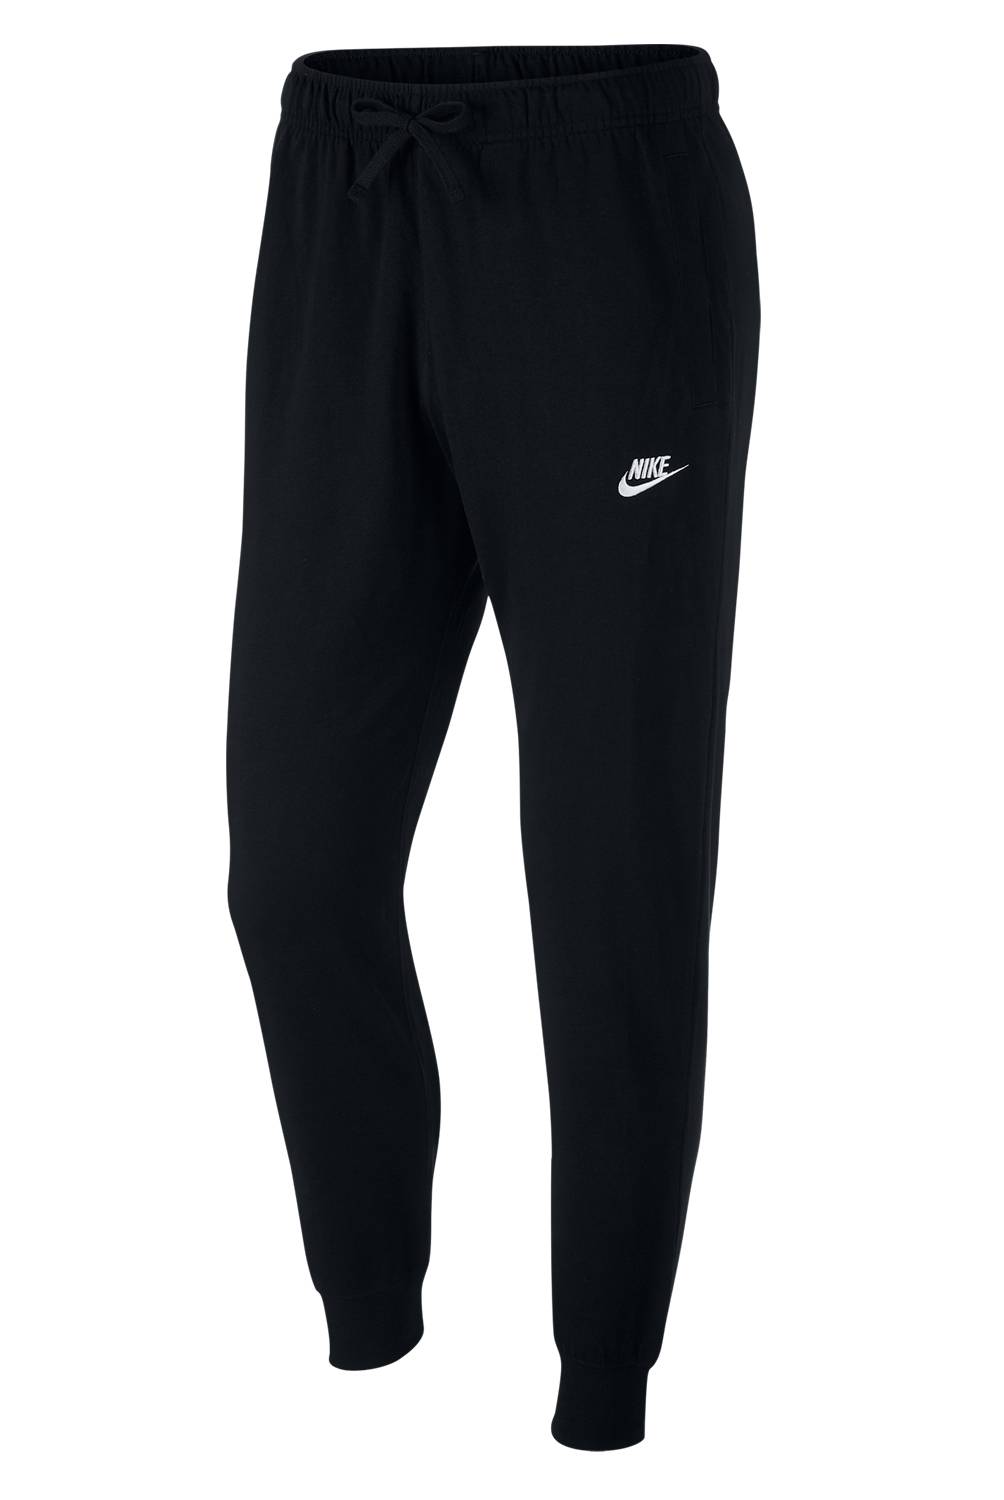 NIKE - Pantalon De Buzo Regular Fit Hombre Nike